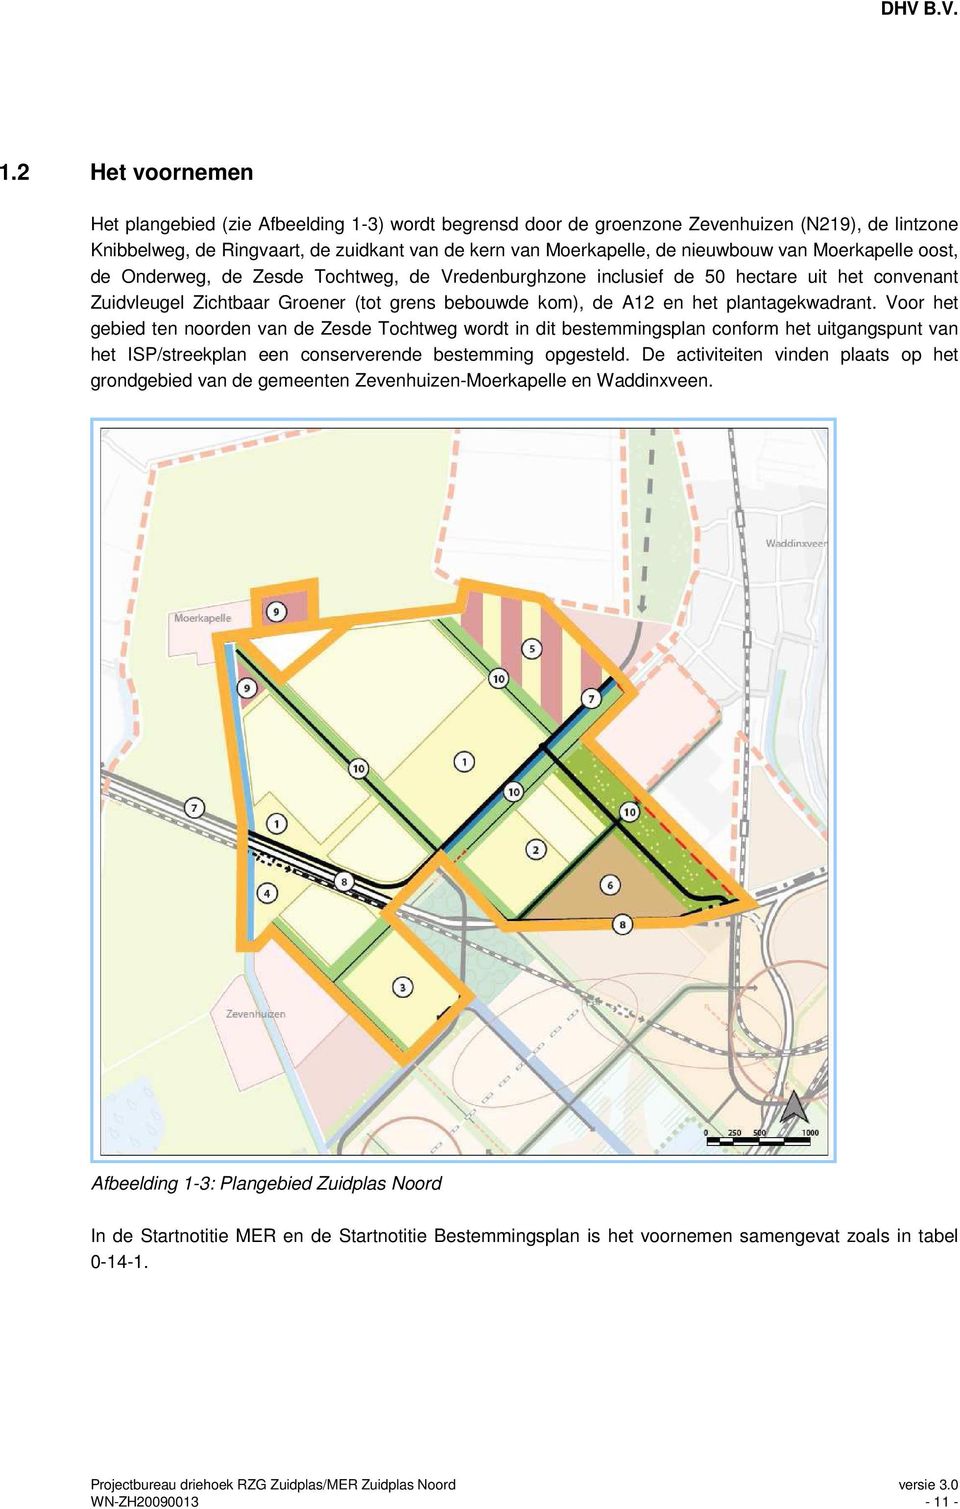 plantagekwadrant. Voor het gebied ten noorden van de Zesde Tochtweg wordt in dit bestemmingsplan conform het uitgangspunt van het ISP/streekplan een conserverende bestemming opgesteld.